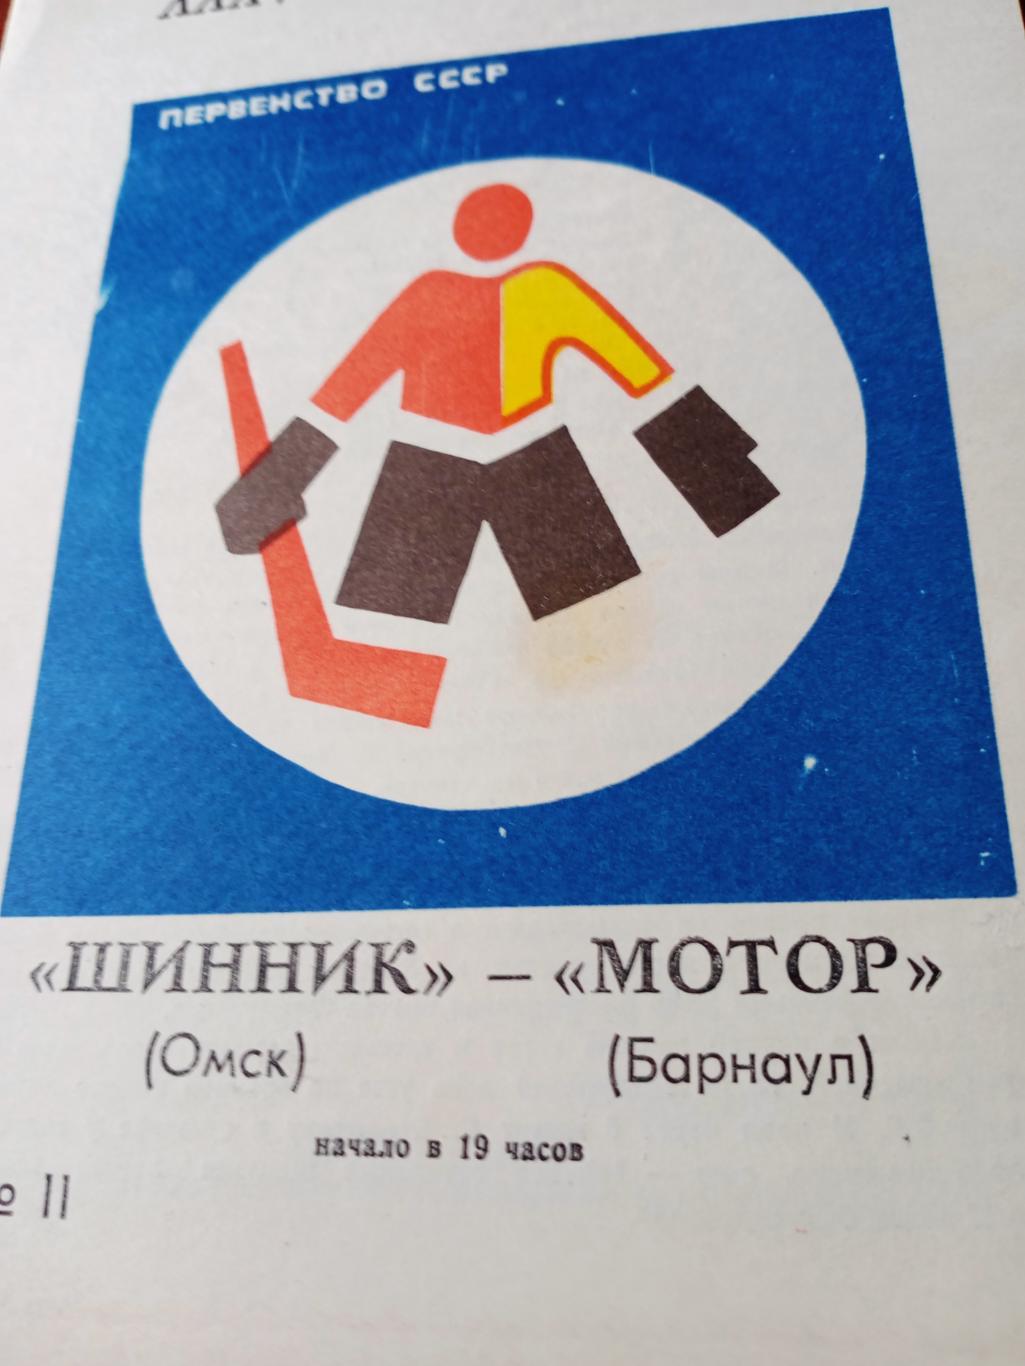 Шинник Омск - Мотор Барнаул. 13 и 14 февраля 1981 год